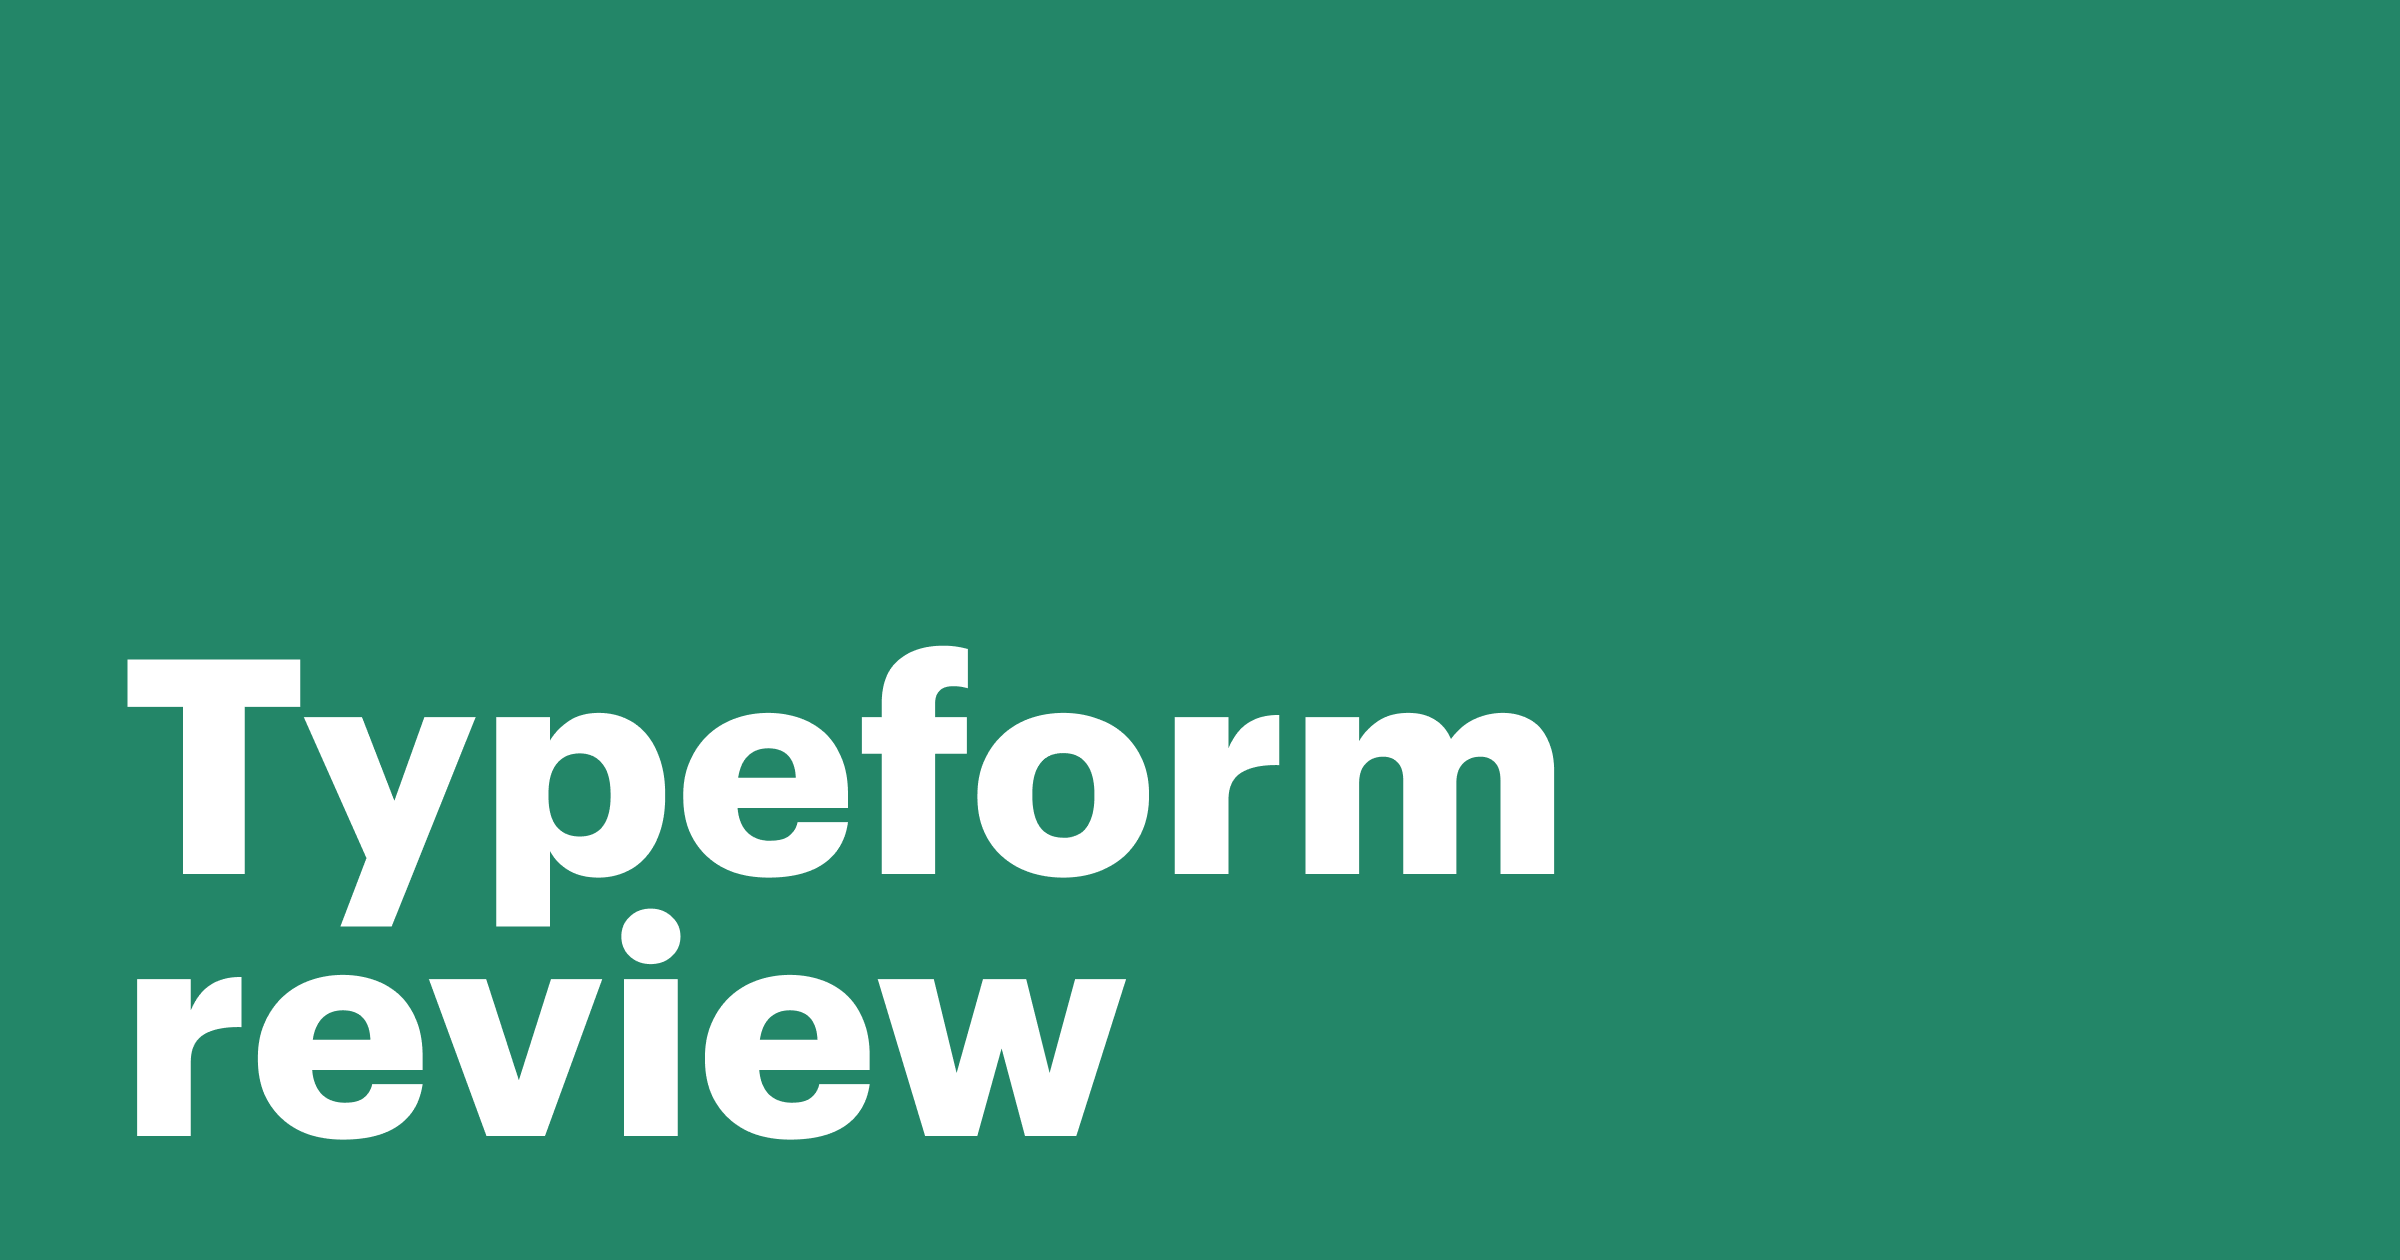 Typeform review